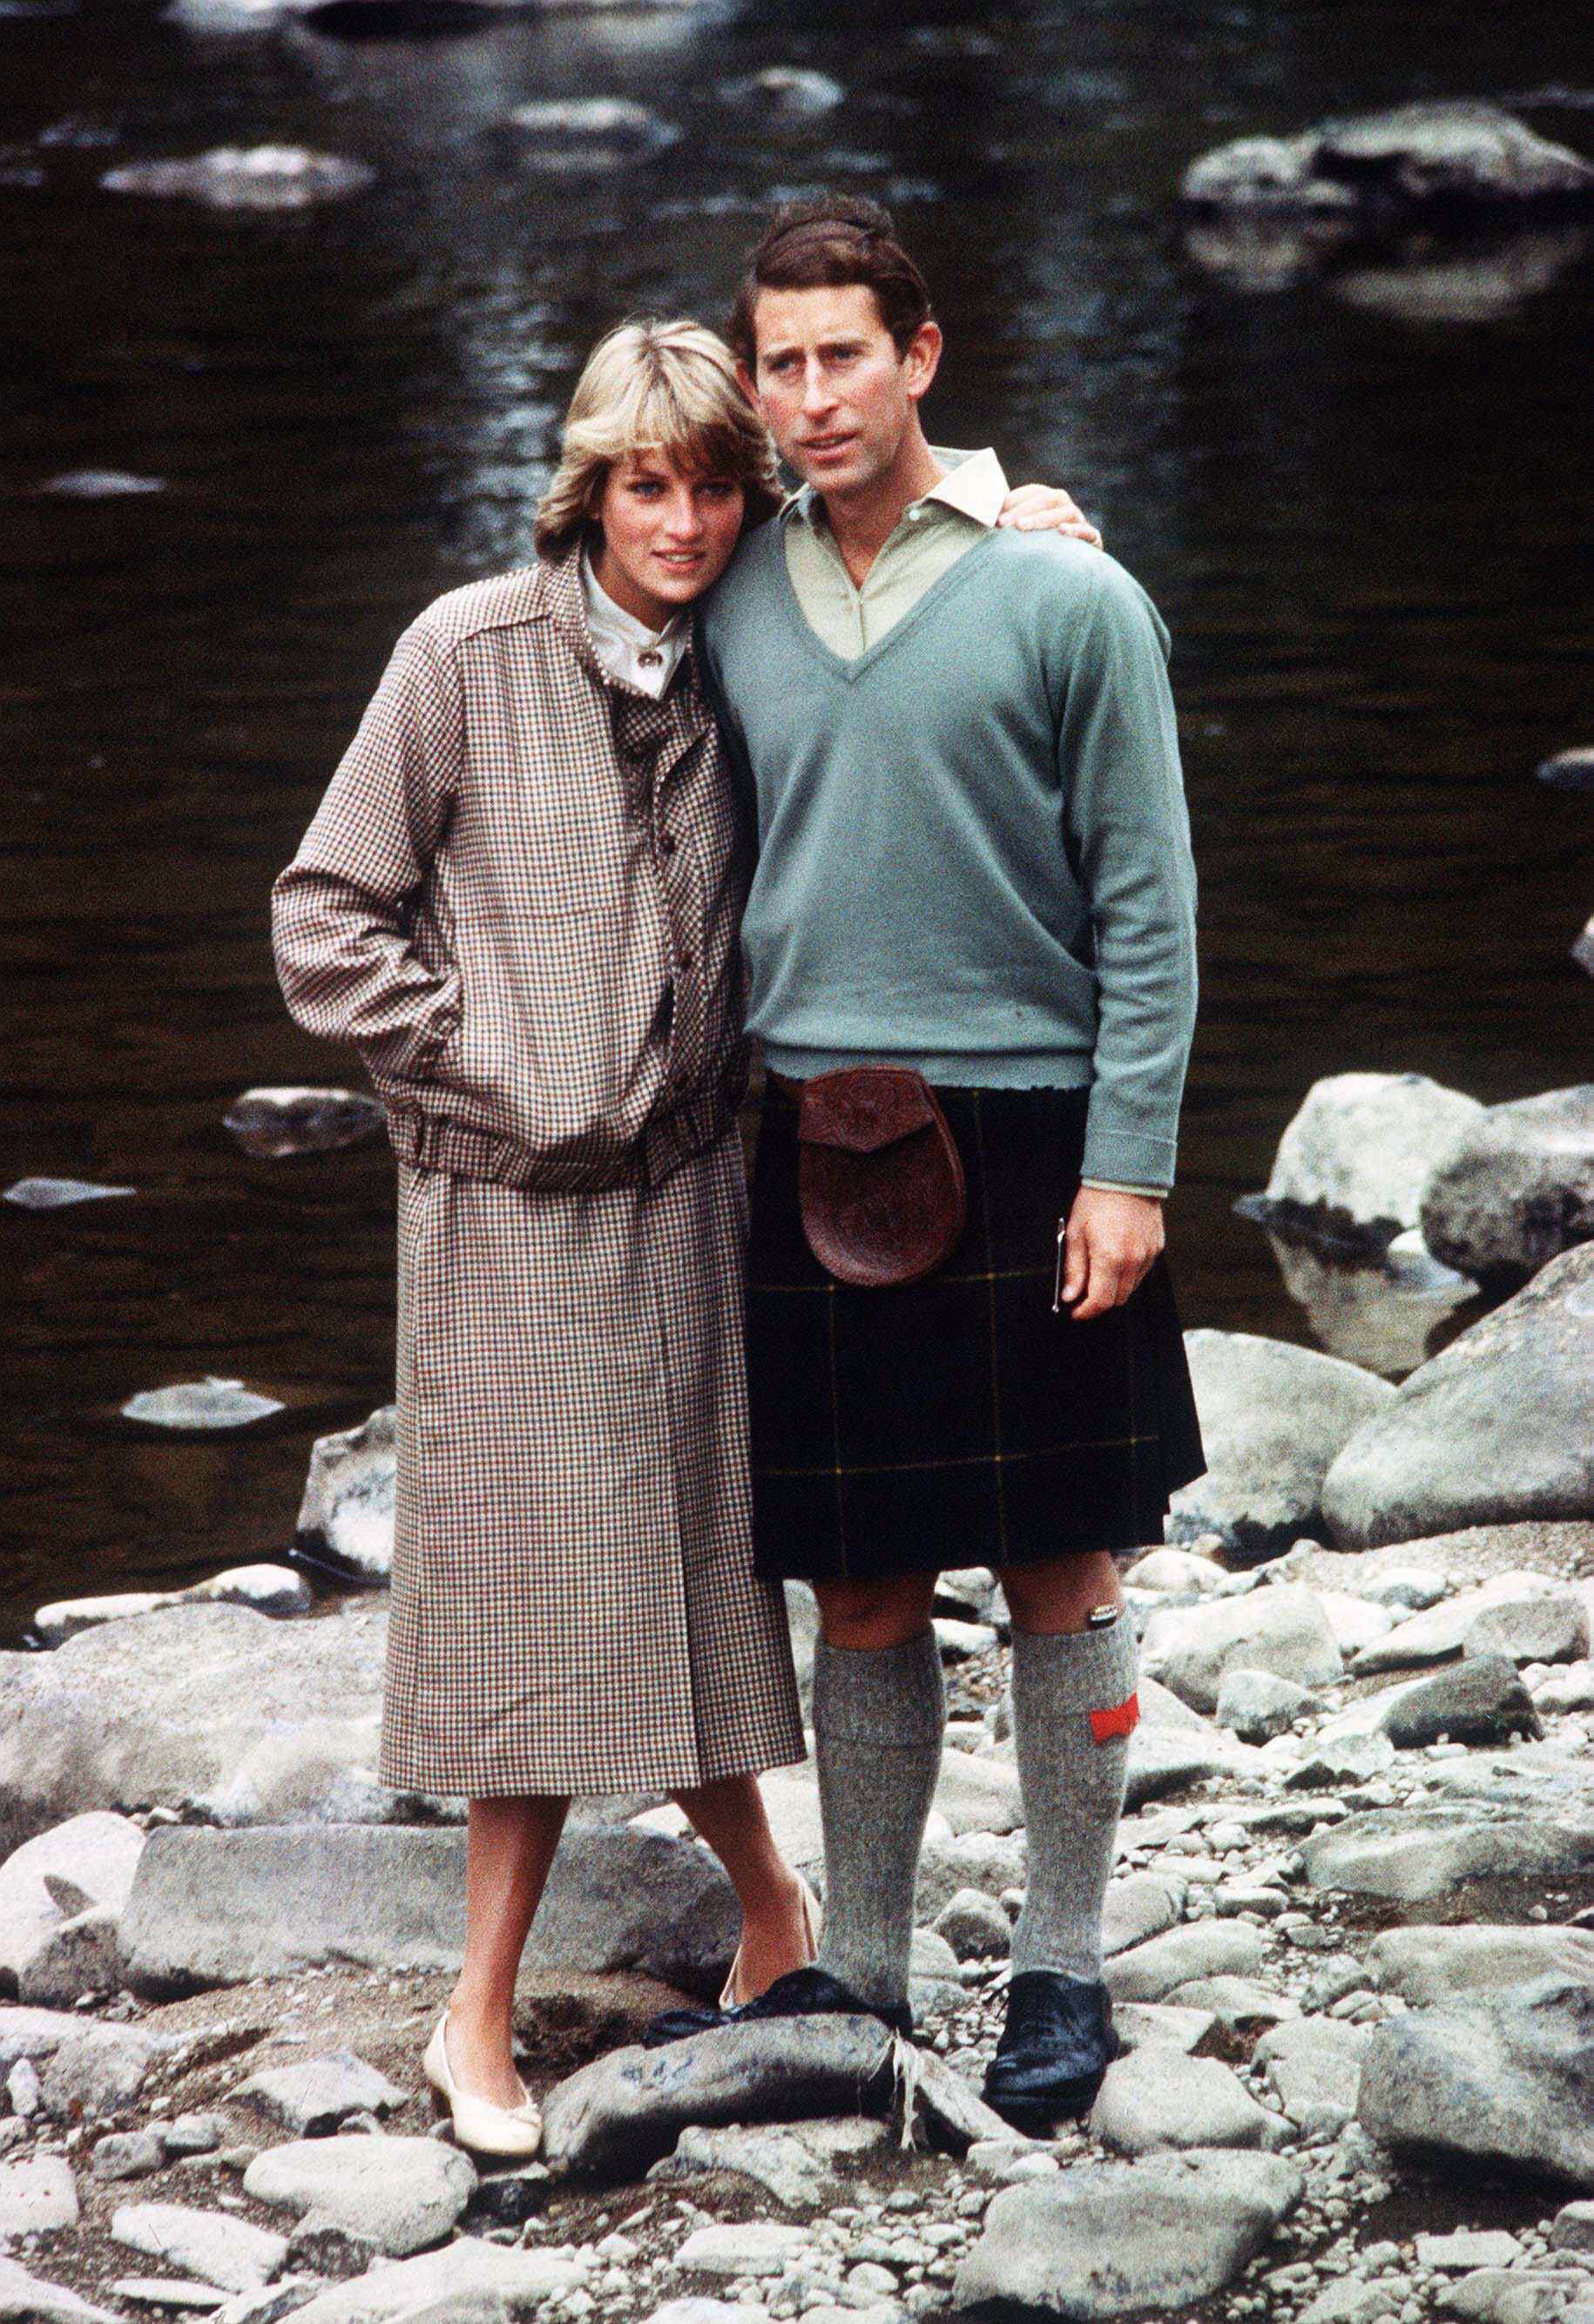 Le prince Charles et la princesse Diana posent pour une photo sur les rives de la rivière Dee dans le parc du château de Balmoral pendant leur lune de miel le 19 août 1981, à Balmoral, en Écosse. | Source : Getty Images